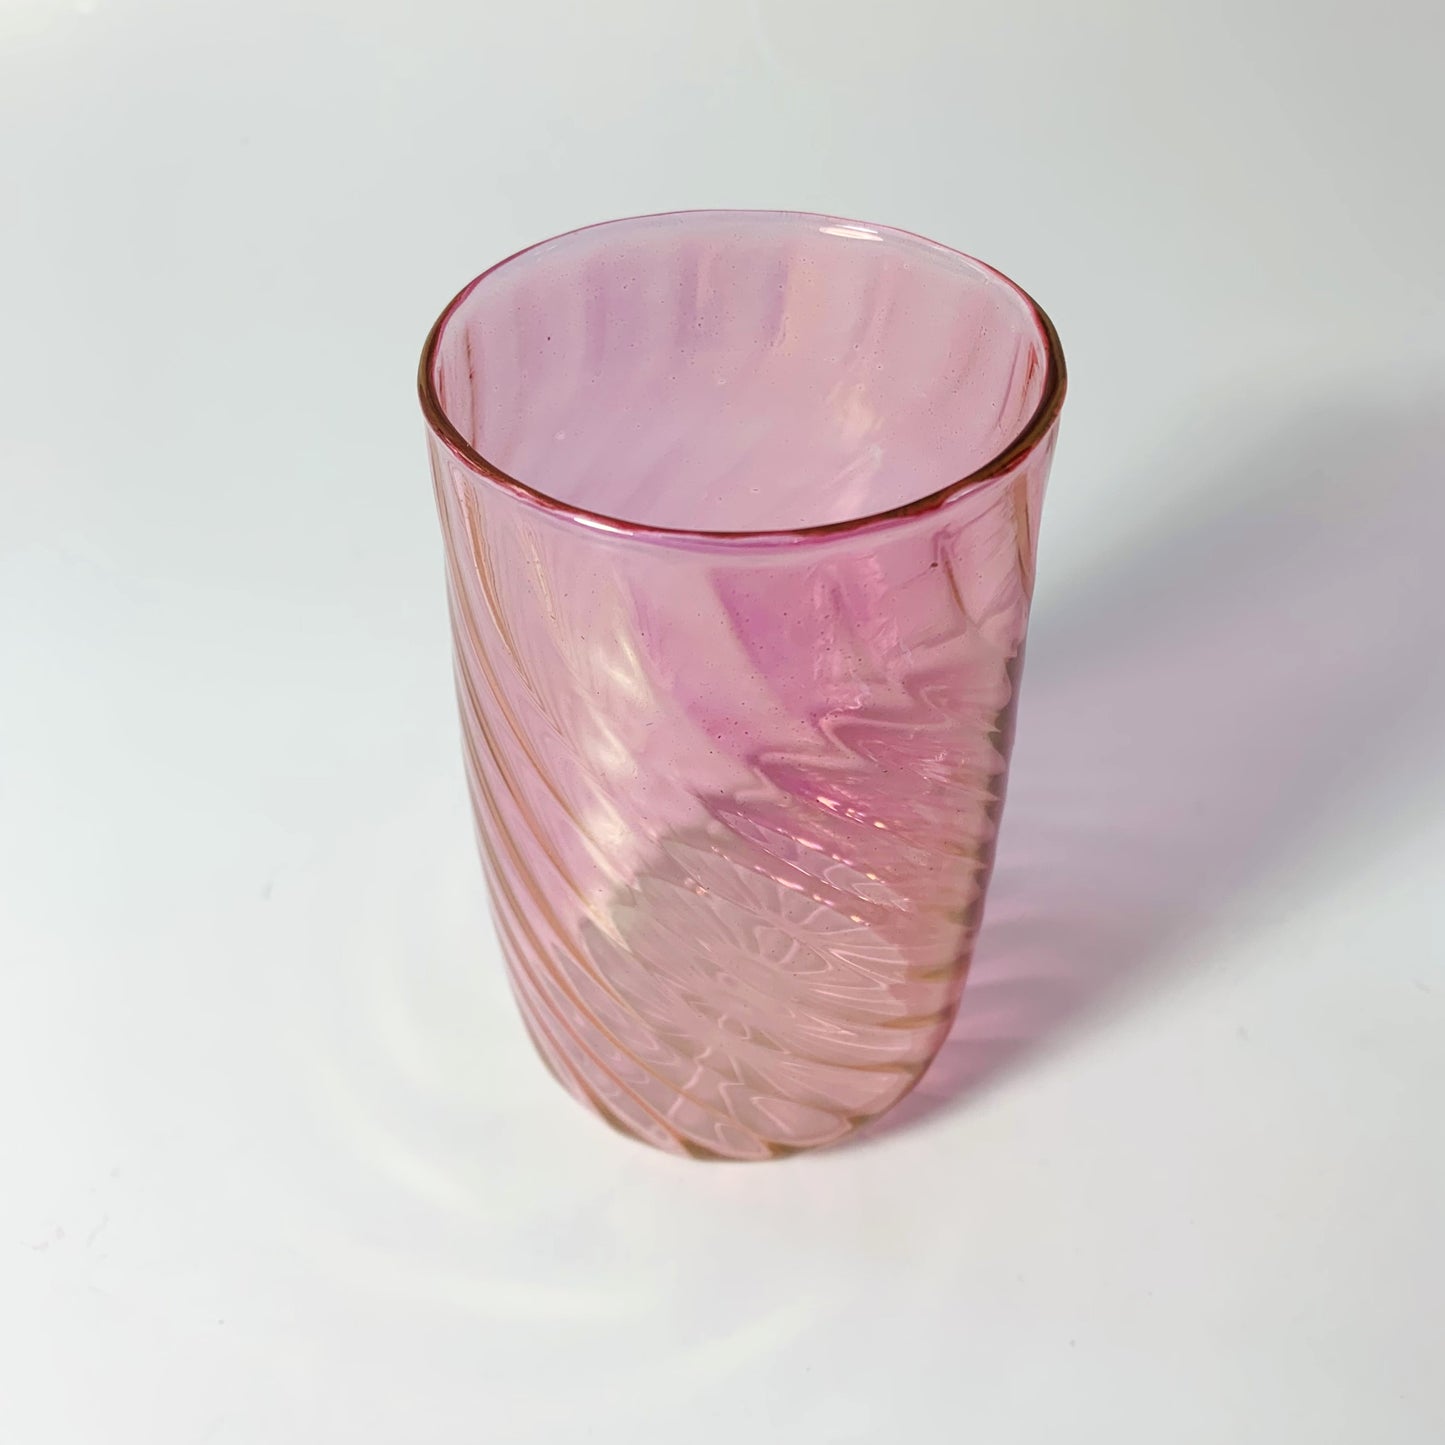 Blown Glass Stemless Glass - Iridescent